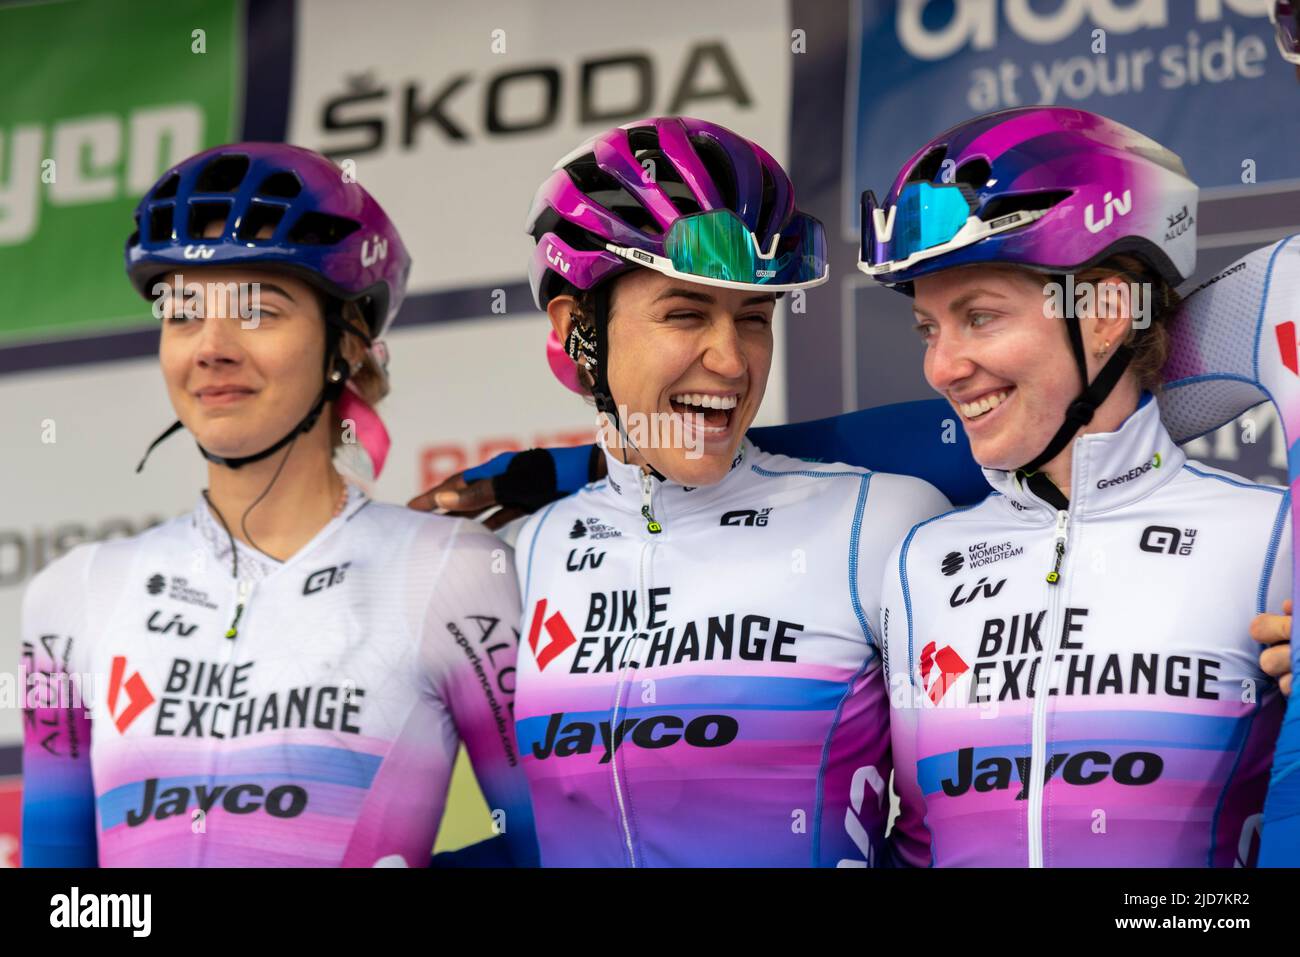 Arianna Fidanza, Kristen Faulkner, Alexandra Manly, Fahrer des Teams  BikeExchange Jayco, bevor sie im UCI-Radrennen The Women's Tour in  Colchester Rennen Stockfotografie - Alamy